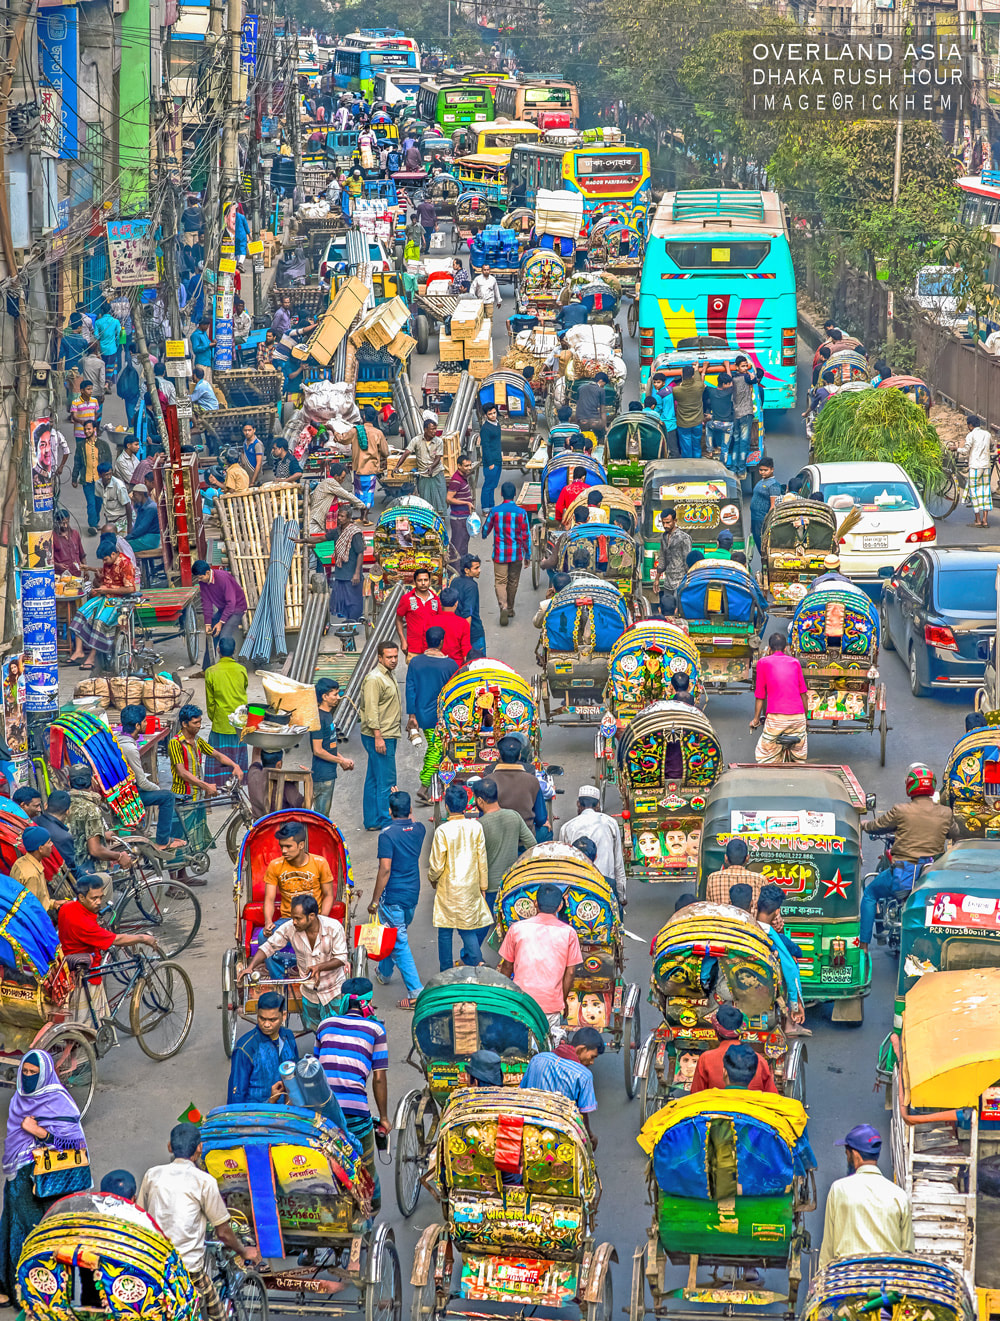 solo overland travel Asia, Dhaka rush hour, DSLR full frame image by Rick Hemi 